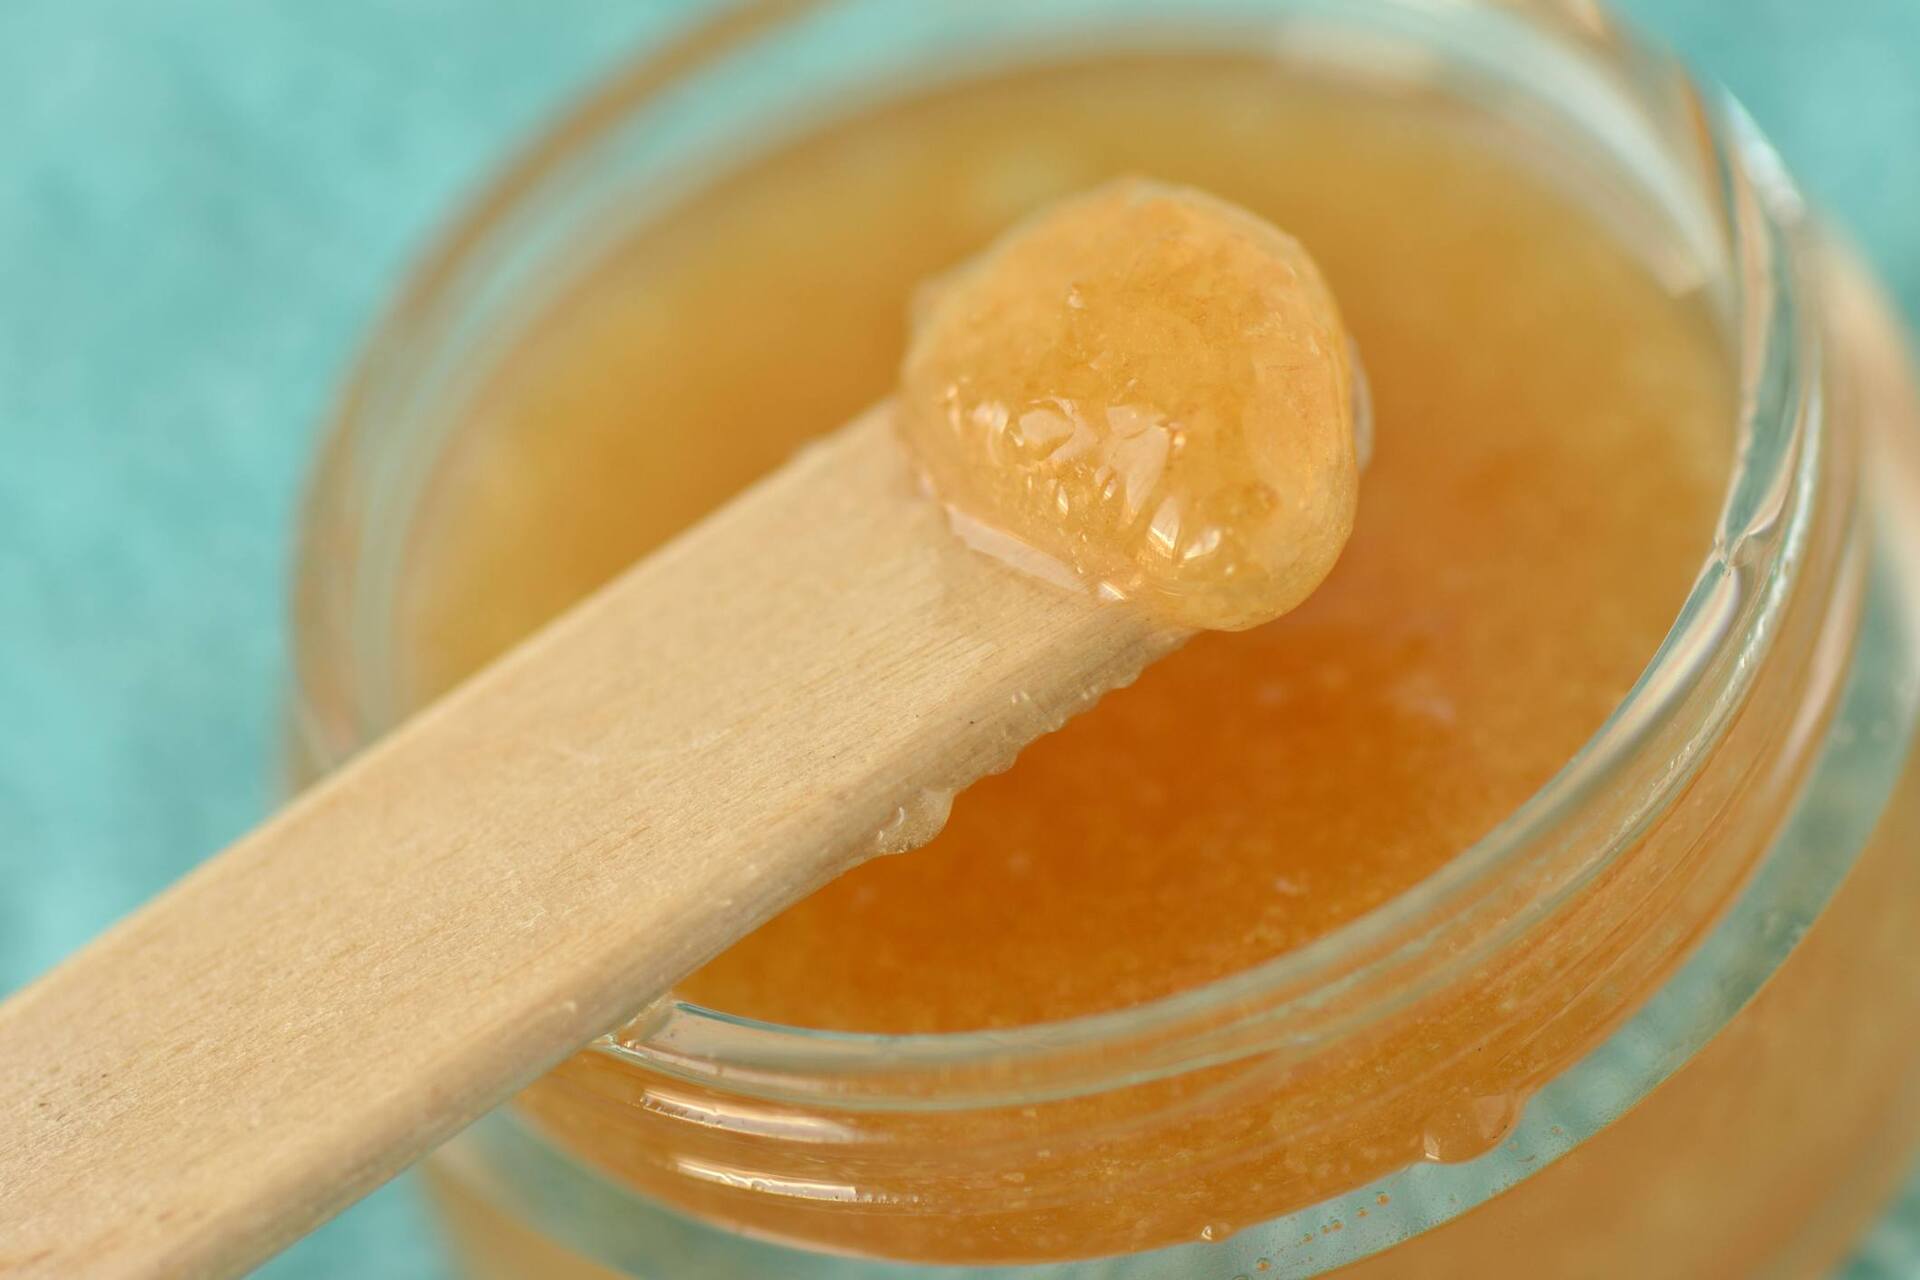 Misture açúcar mascavo com óleo de amêndoas e obtenha um excelente esfoliante